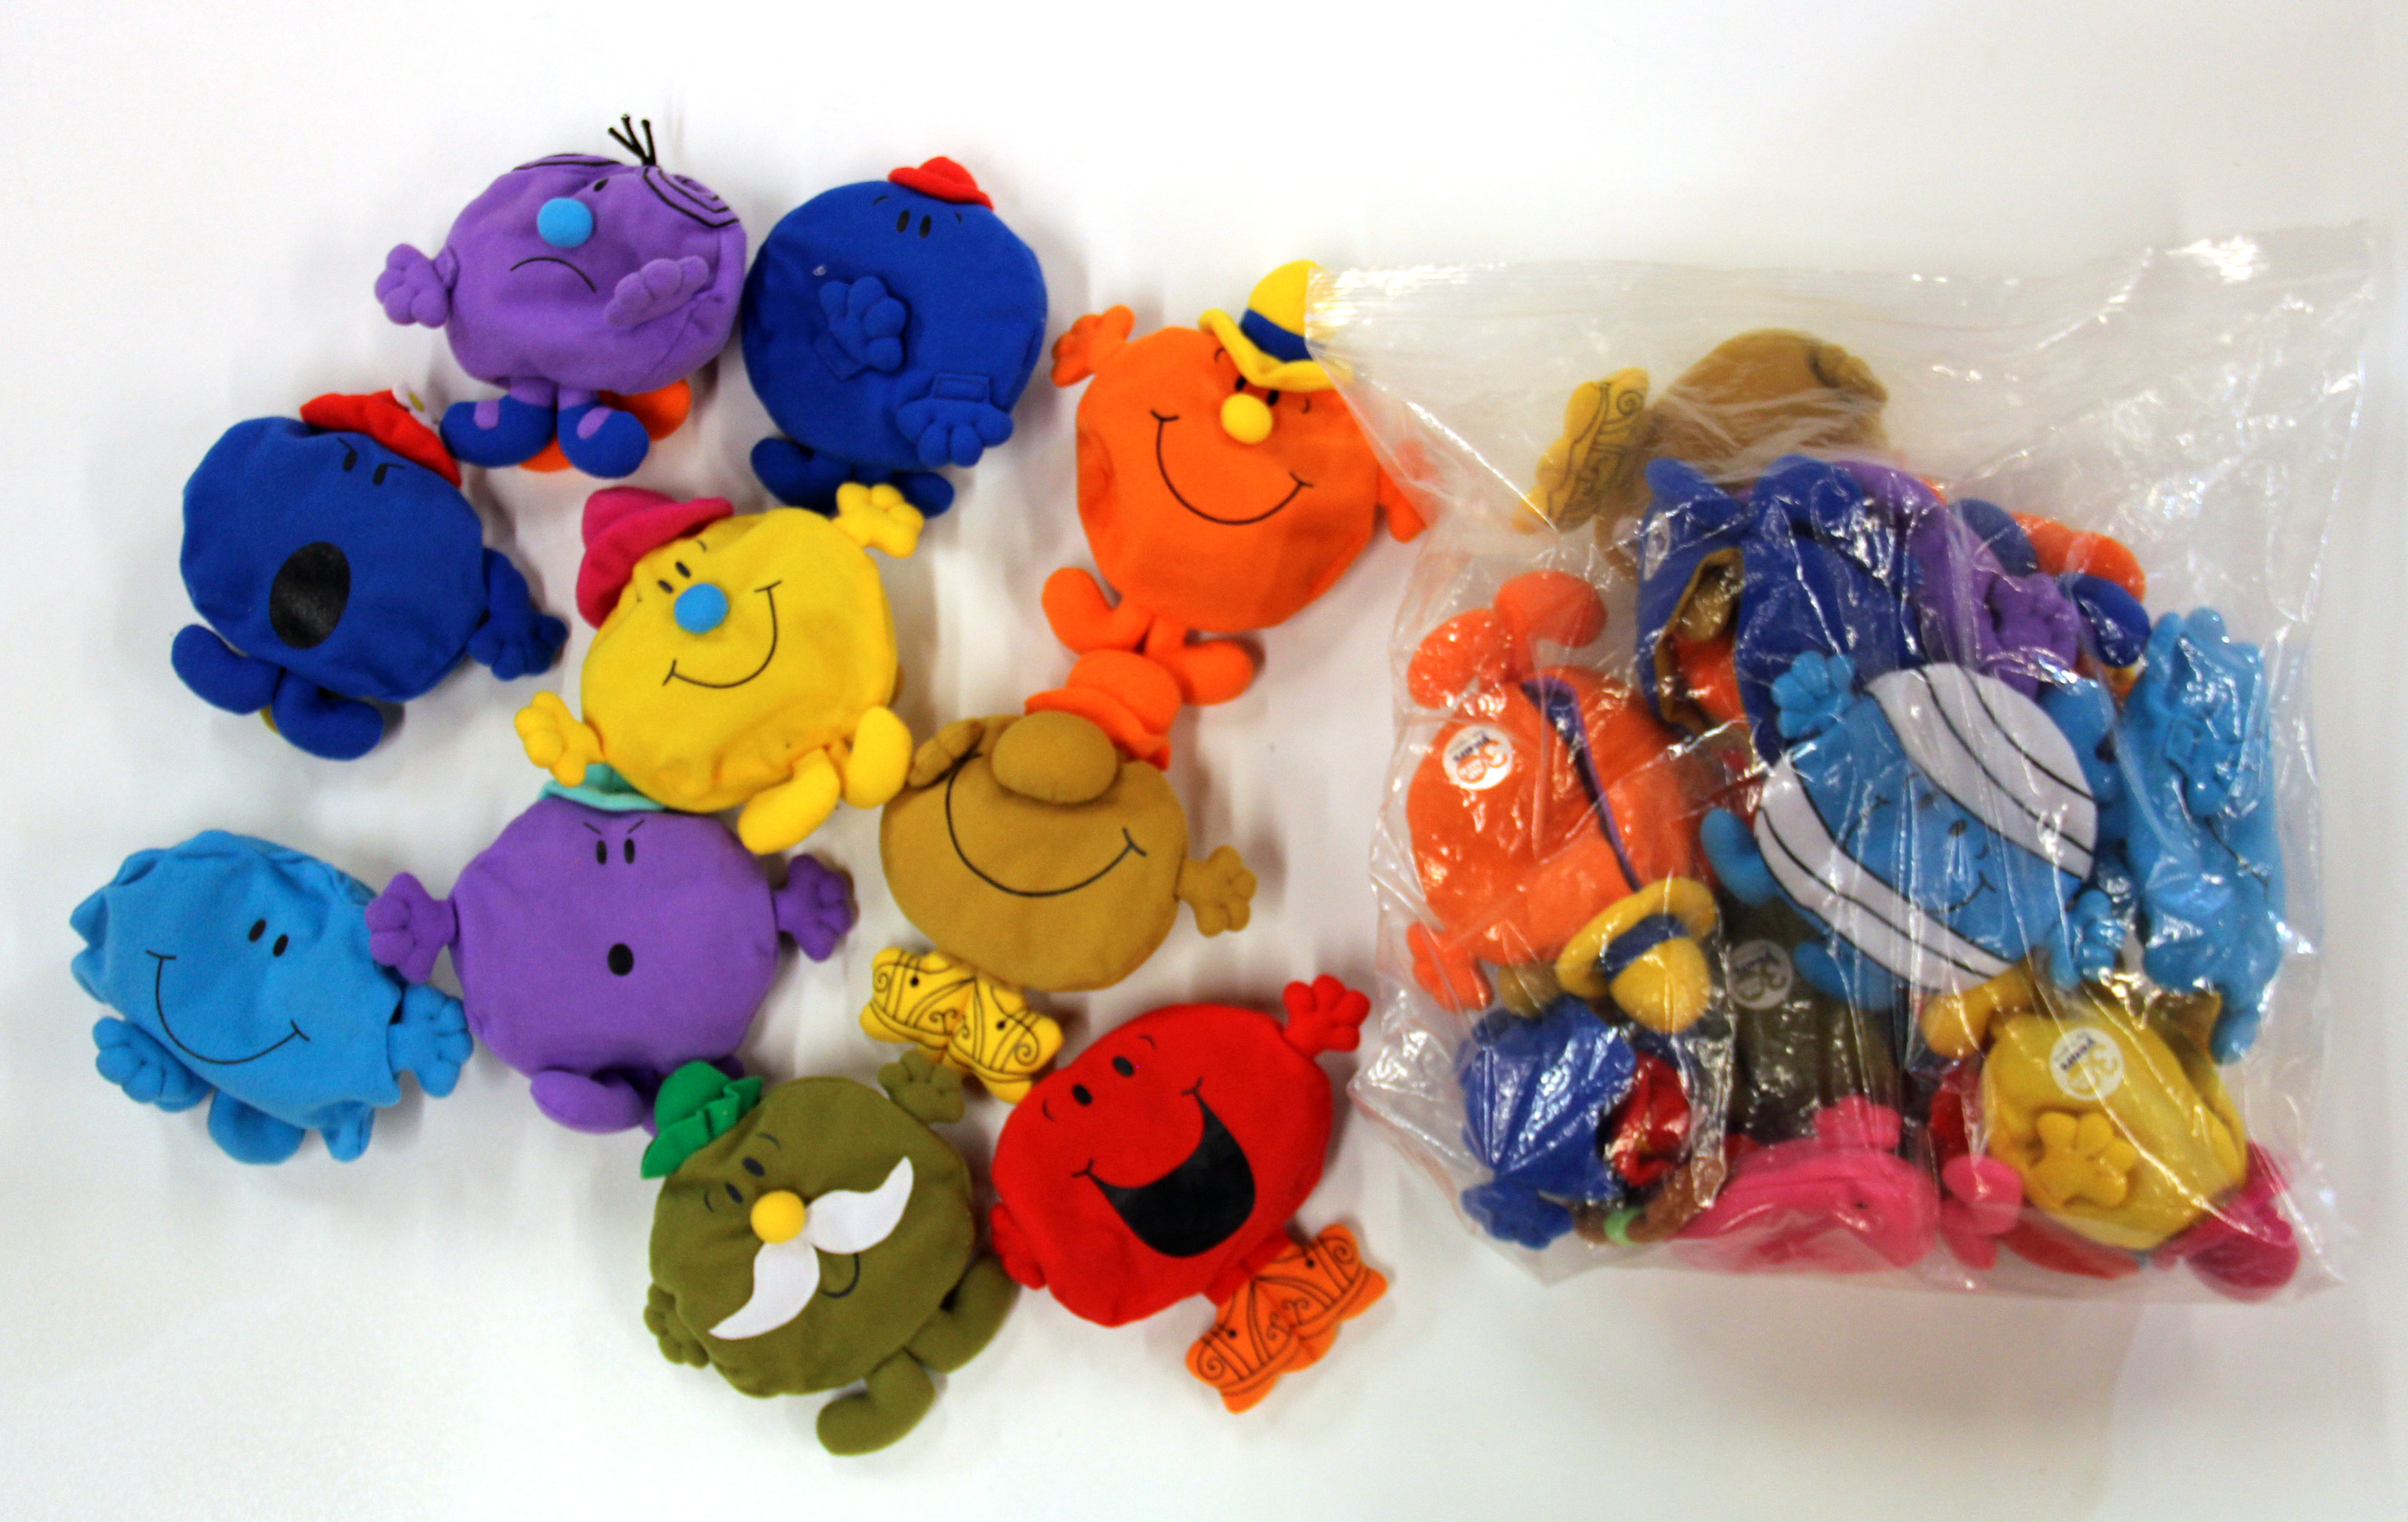 A set of promotional Mr. Men toys.